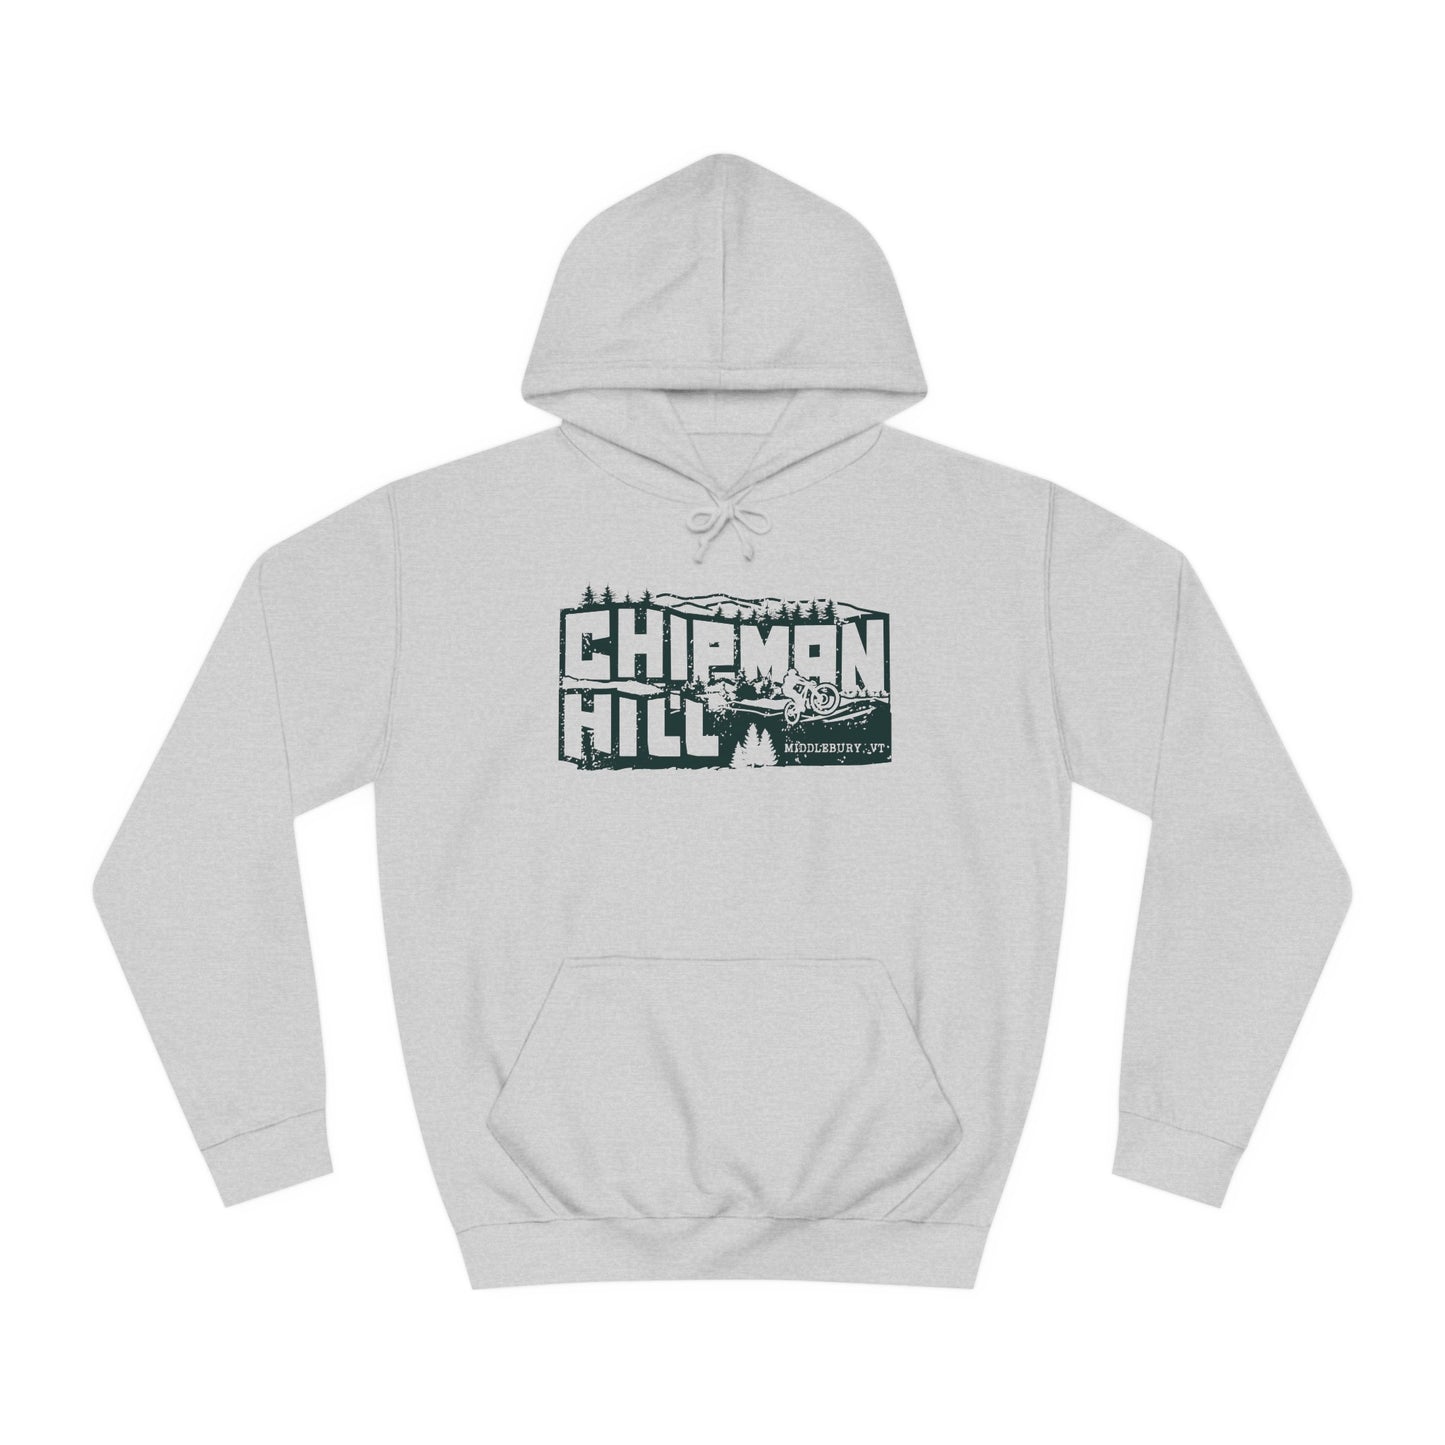 Chipman Hill Hoodie